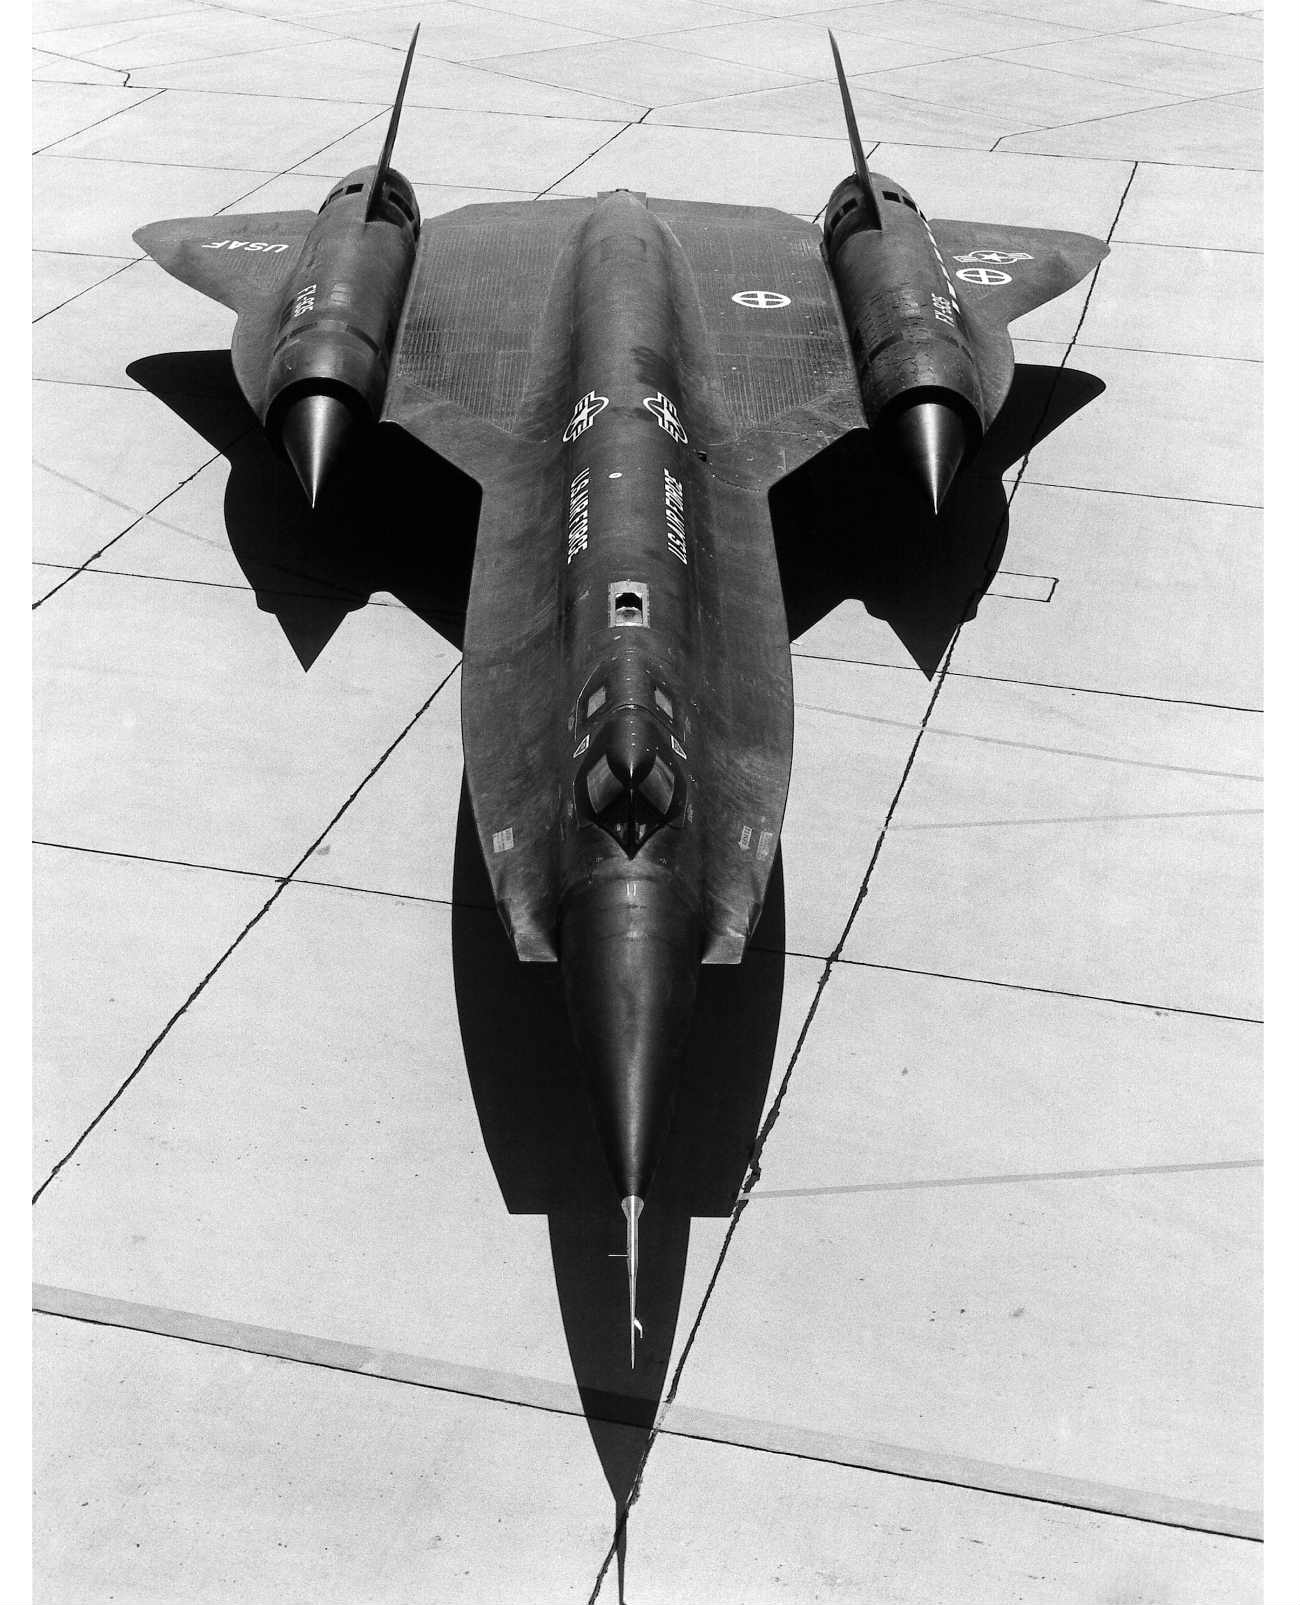 Lockheed YF-12 - On ramp